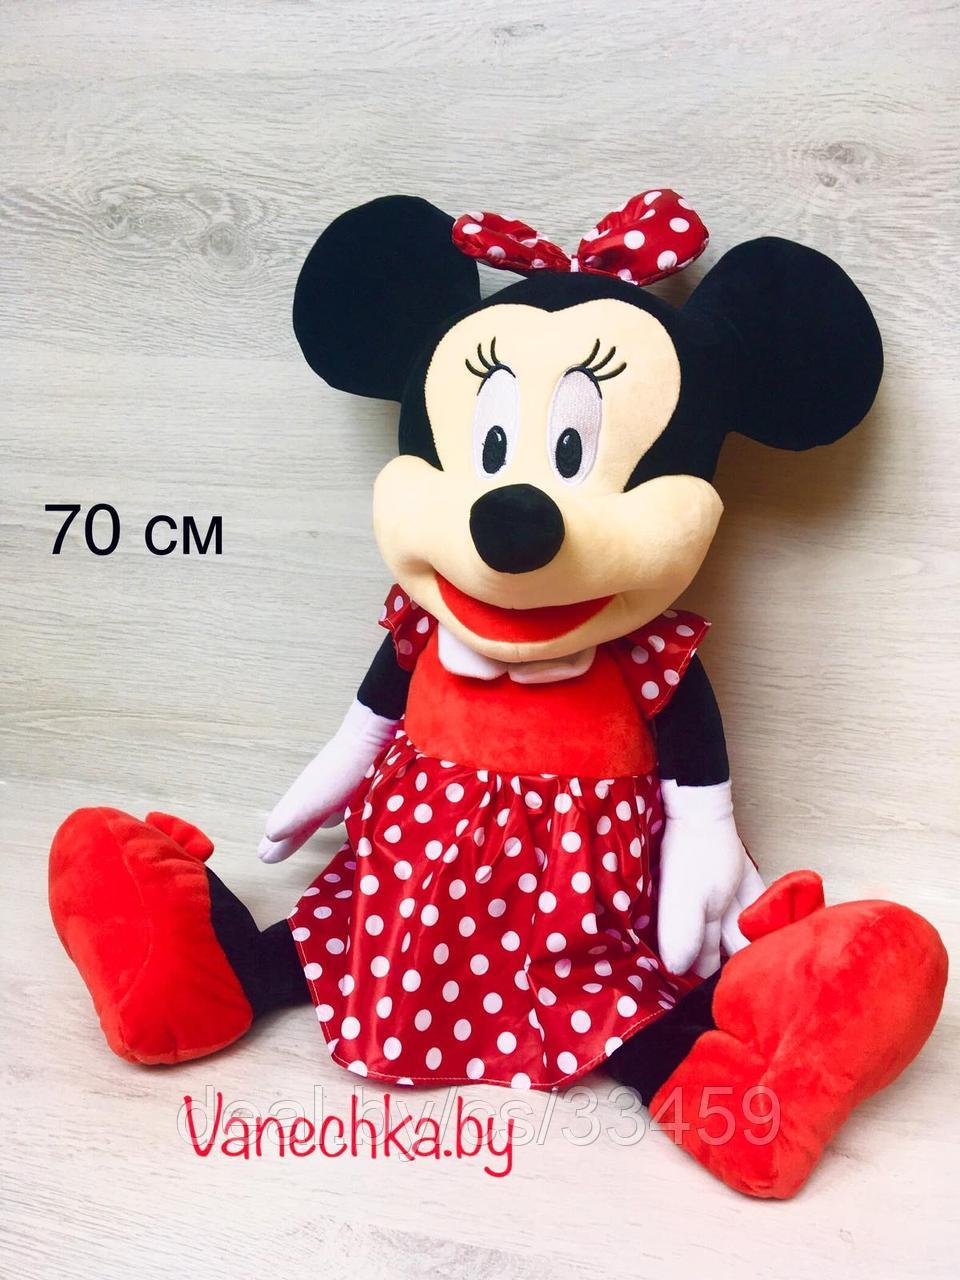 Мягкая игрушка Disney Минни Маус 70 см Большая!